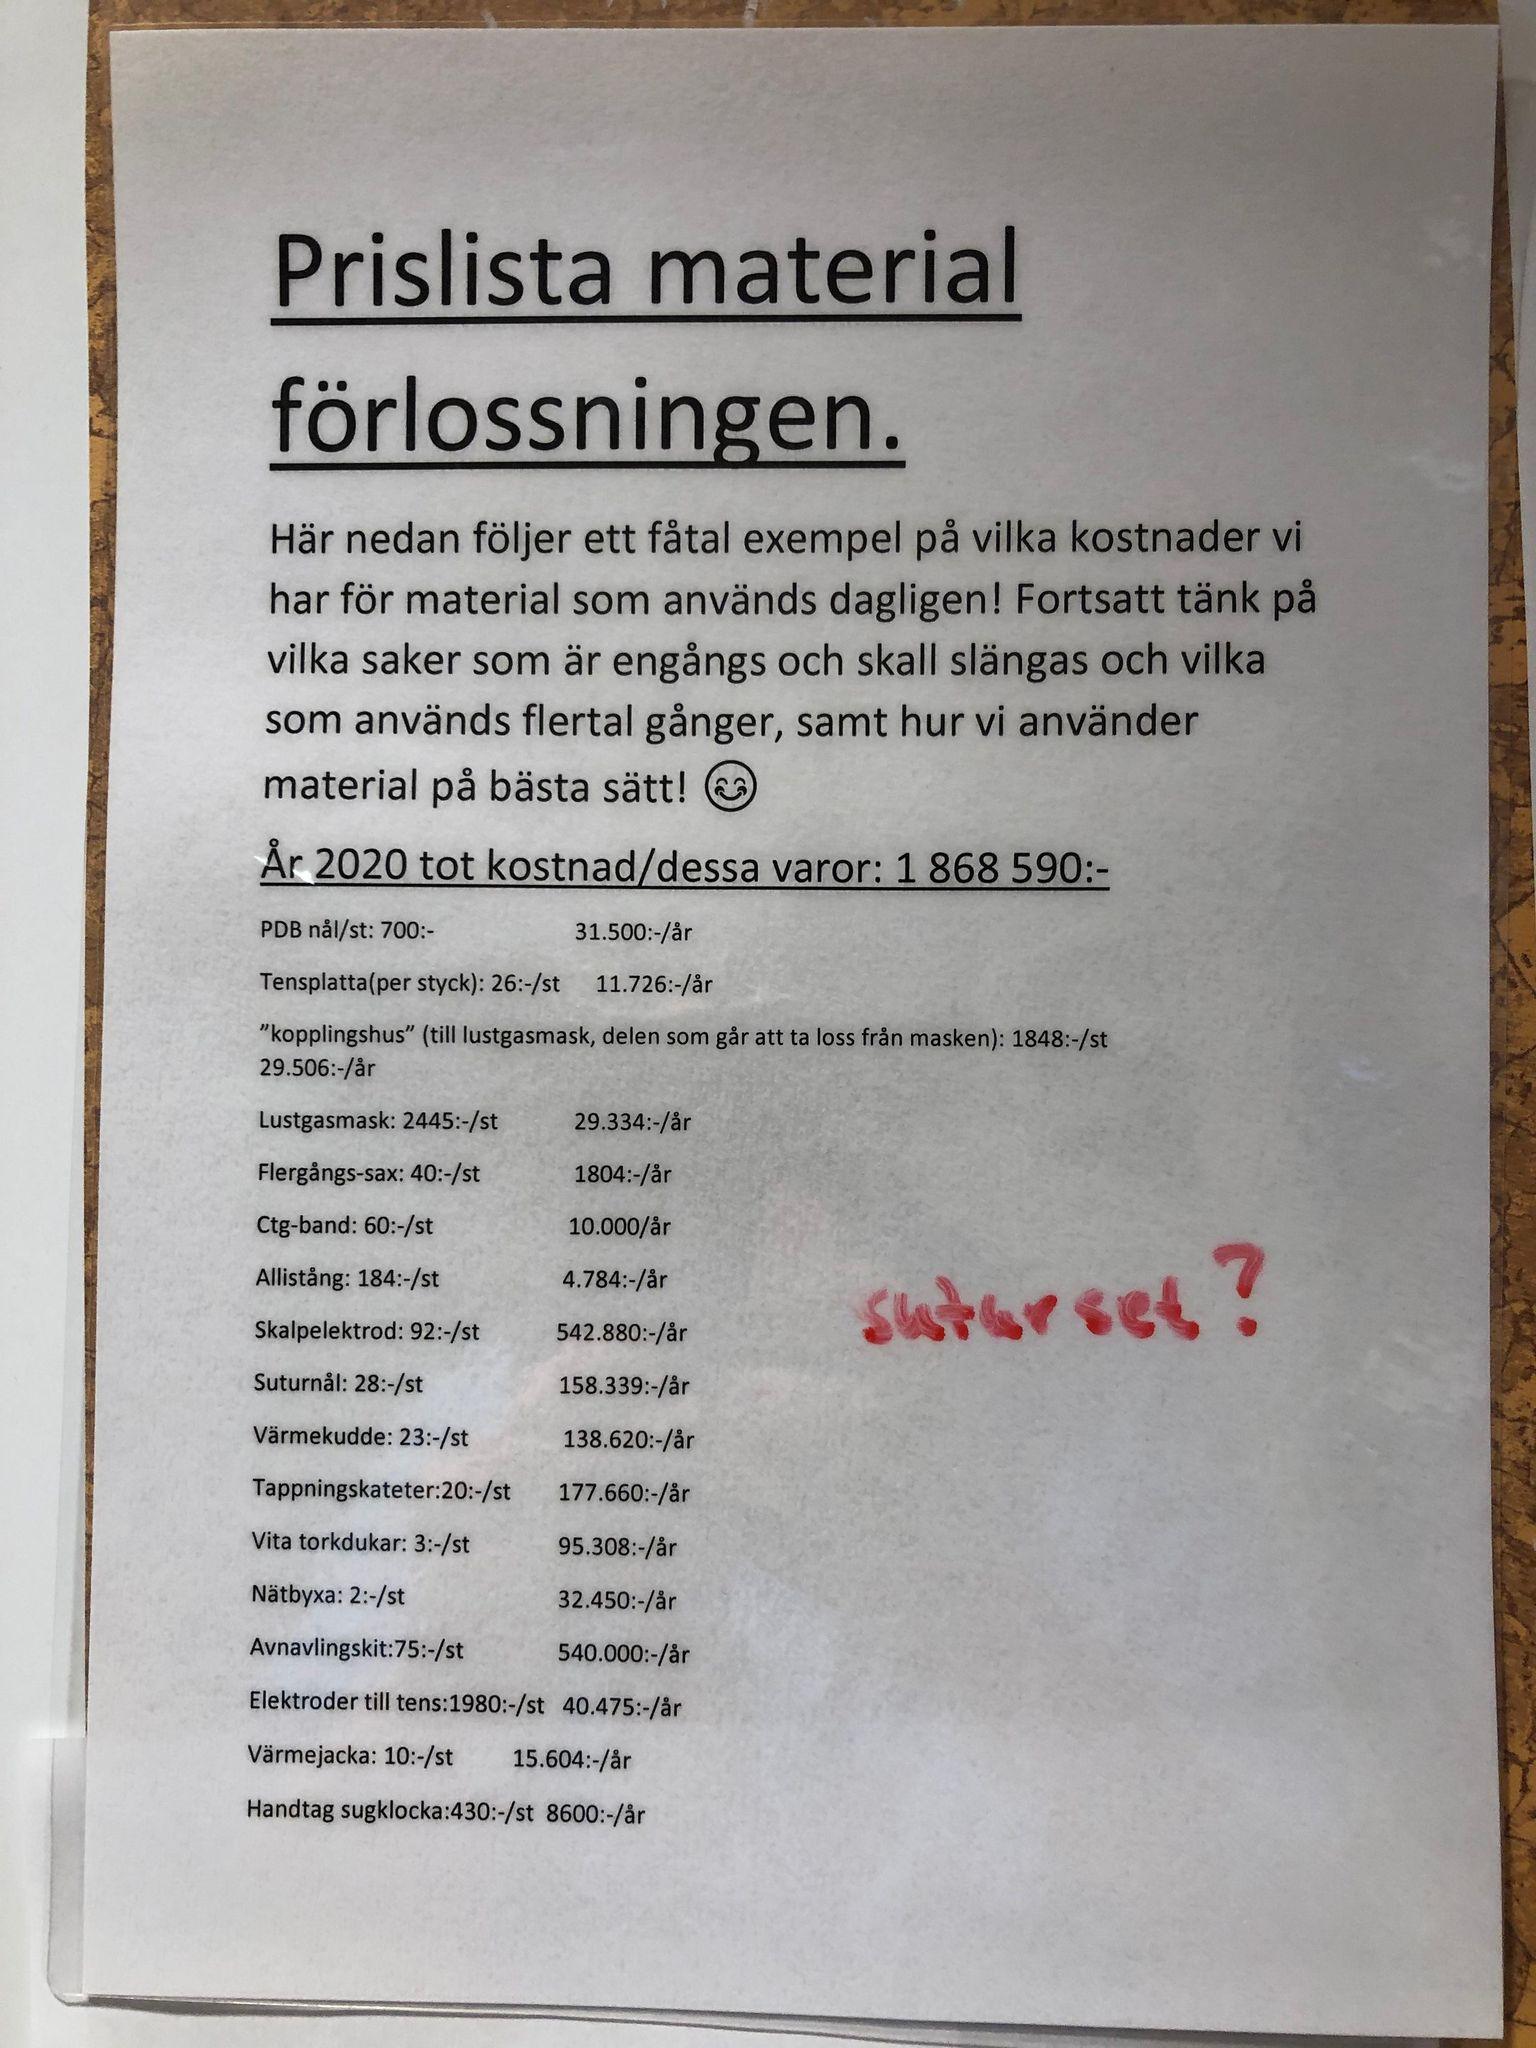 Södersjukhusets prislista med material vid förlossningen. 